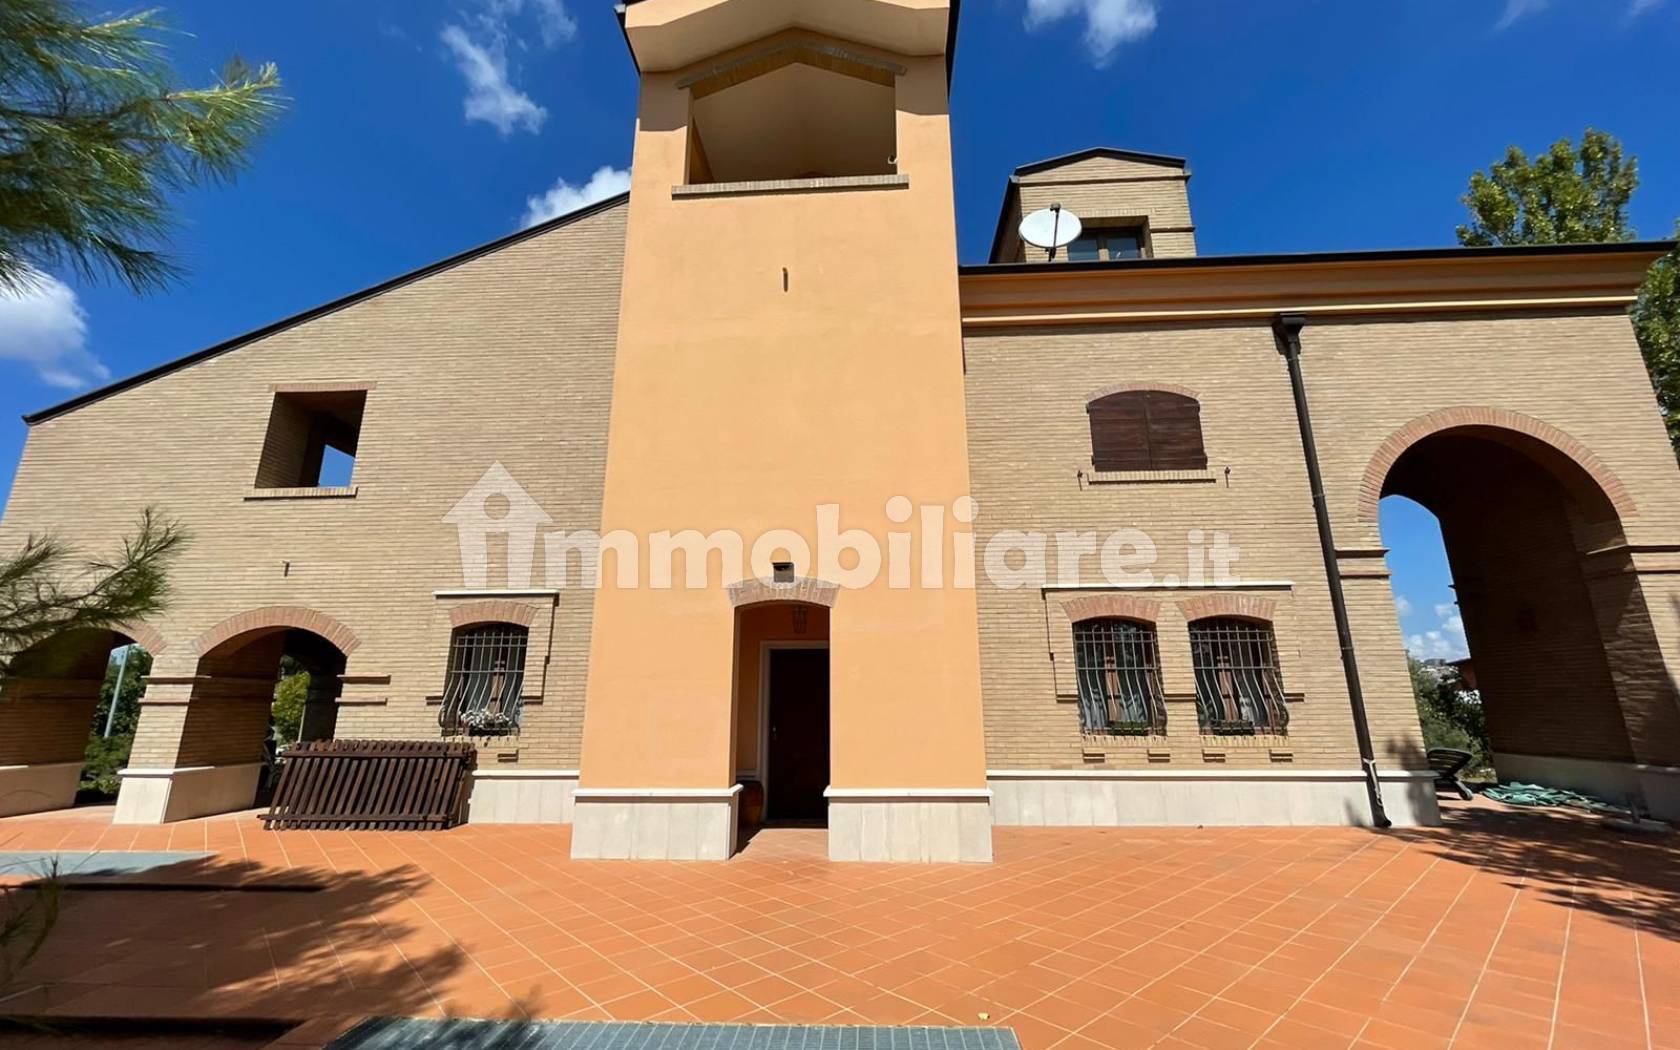 Villa unifamiliare Sp10, Torremaggiore